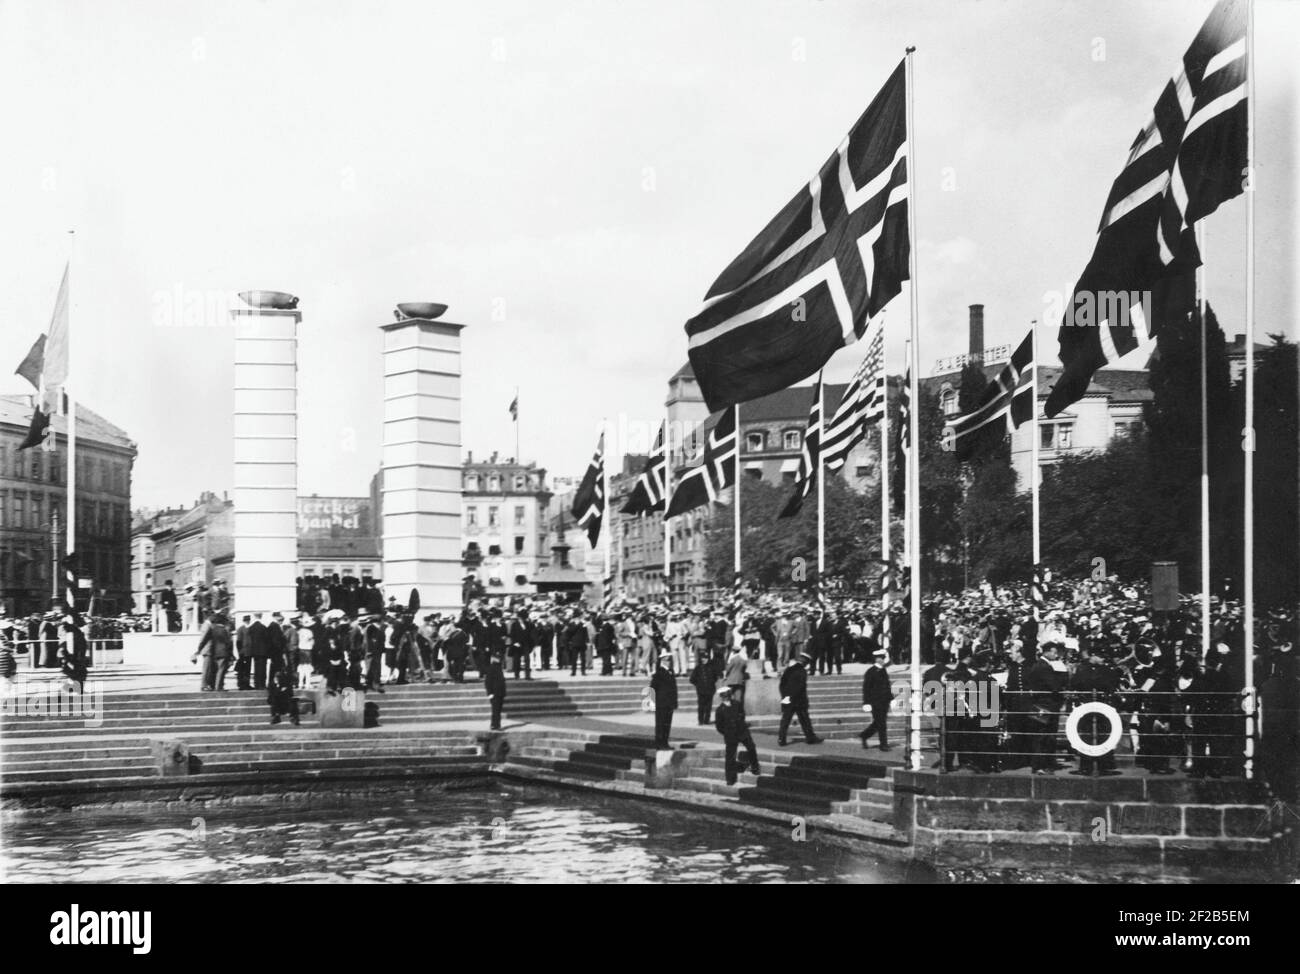 Roald Amundsen. Norwegischer Polarforscher. 1872-1928. Hier in Oslo warten am 15 1926. Juli Krähen auf seine Rückkehr, nachdem das Luftschiff Norge erfolgreich über den Nordpol geflogen ist. Amundsen hat am 11 1926. Mai beim Erreichen des Nordpols die norwegische Flagge auf dem Eis des Nordpols hinuntergedroschelt. Stockfoto